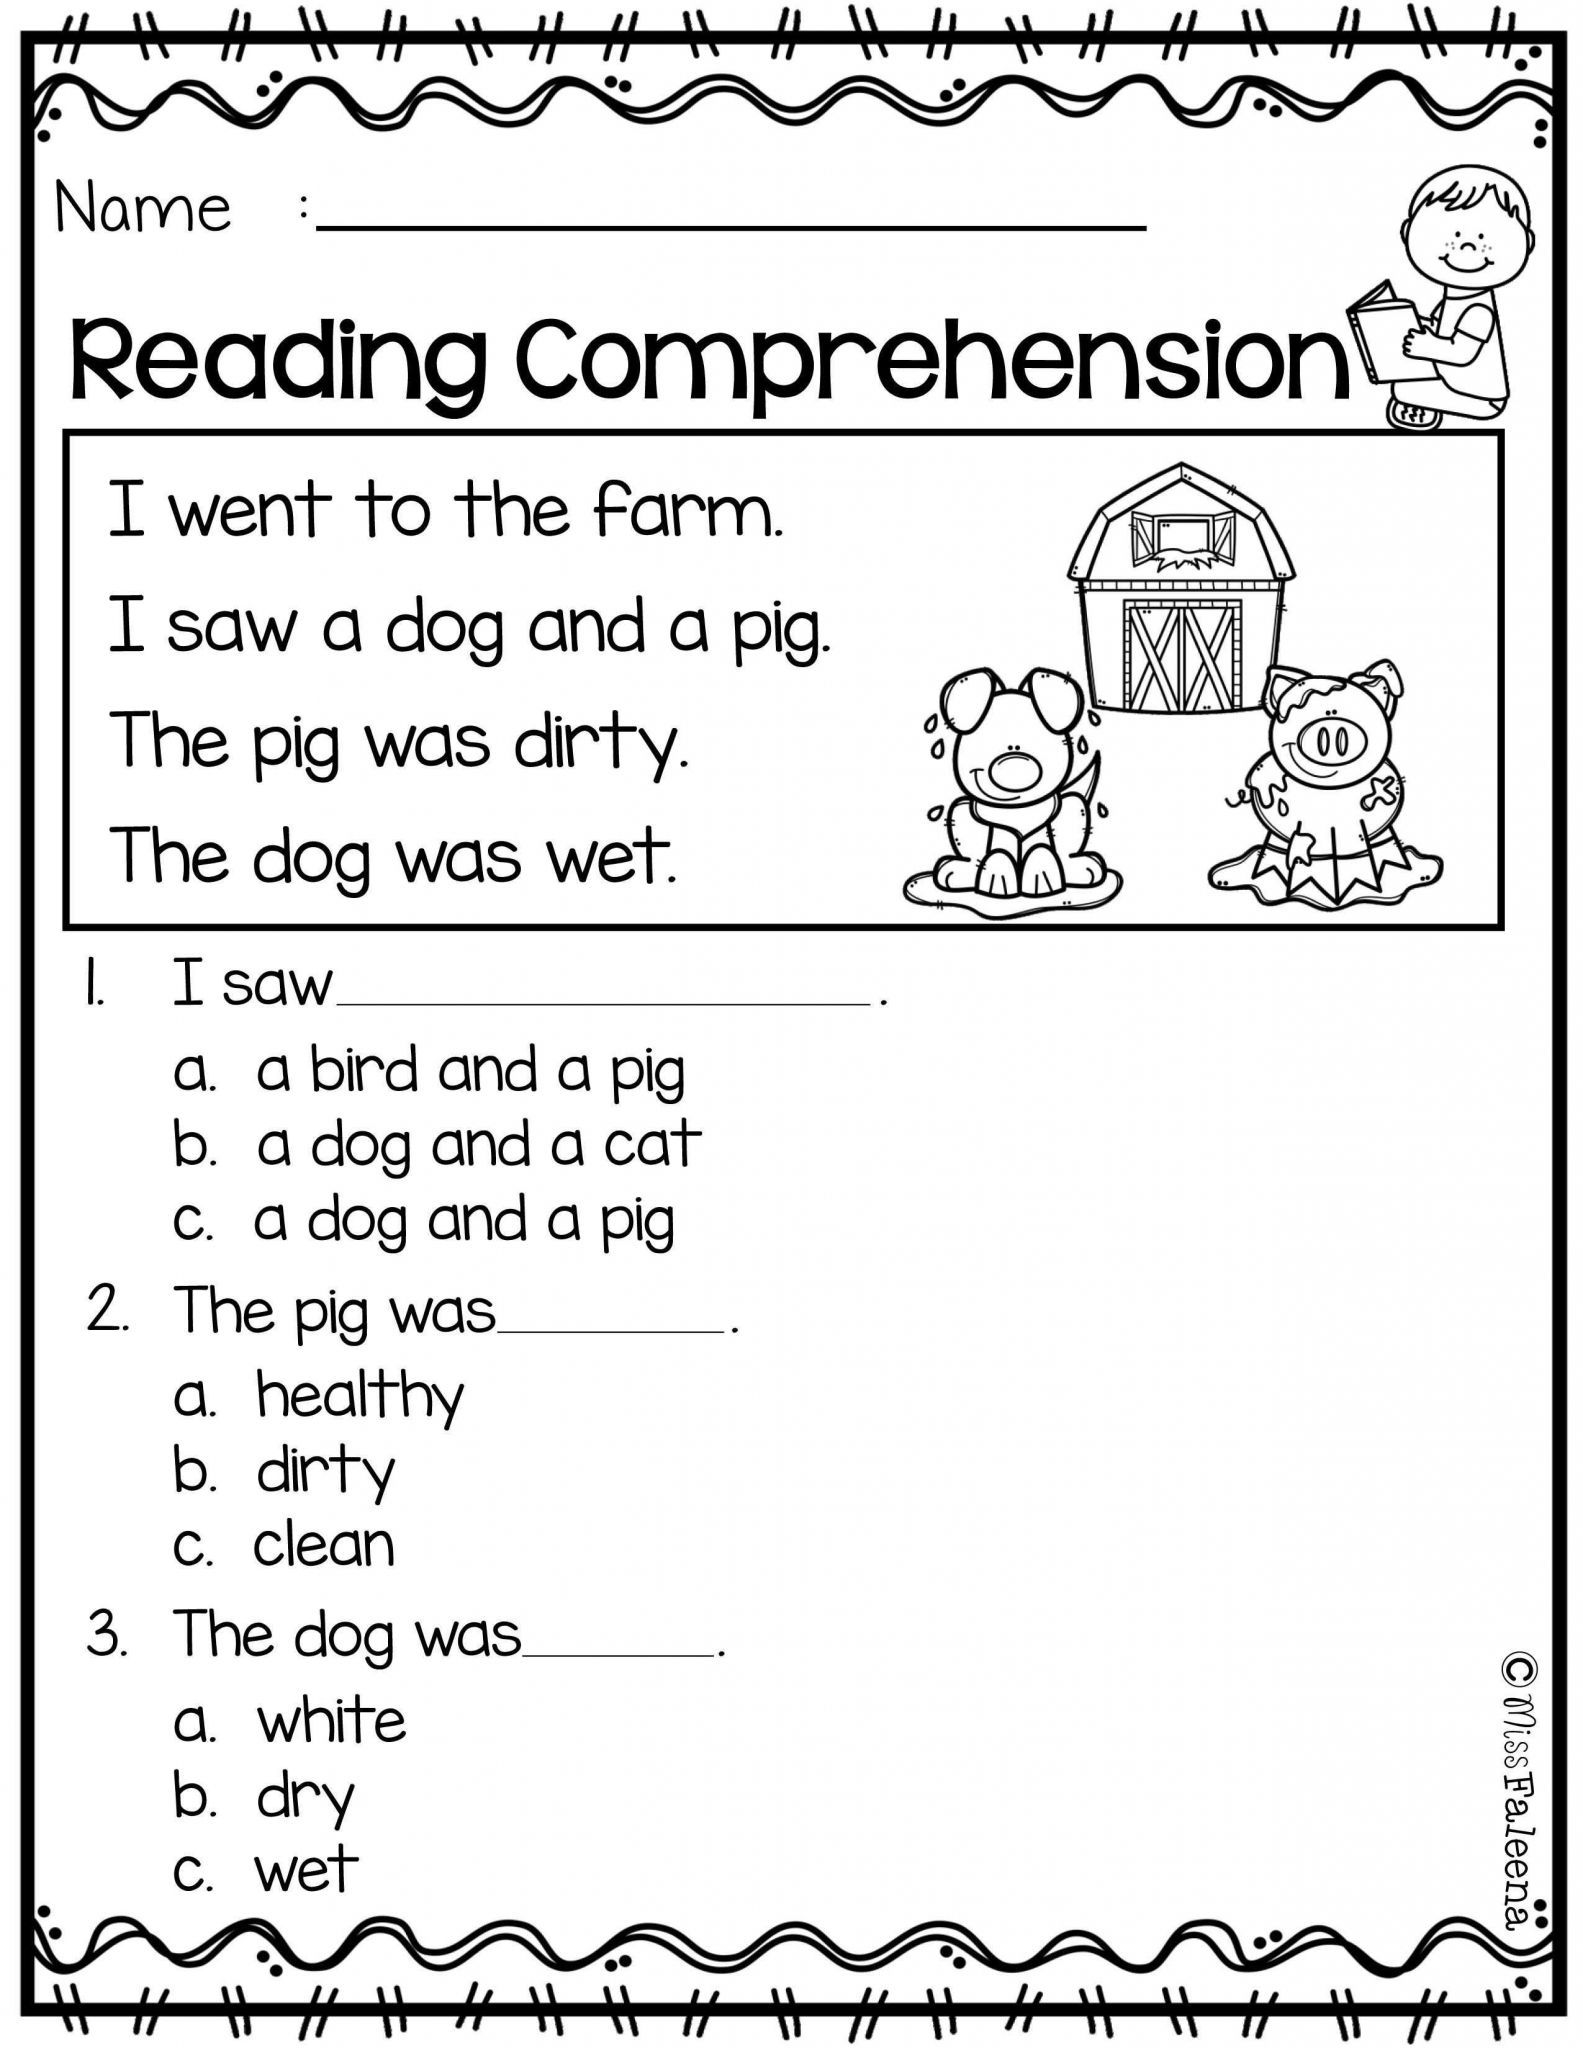 Free 1st Grade Comprehension Worksheets together with Free Reading Prehension Worksheets Inspirational 2nd Grade